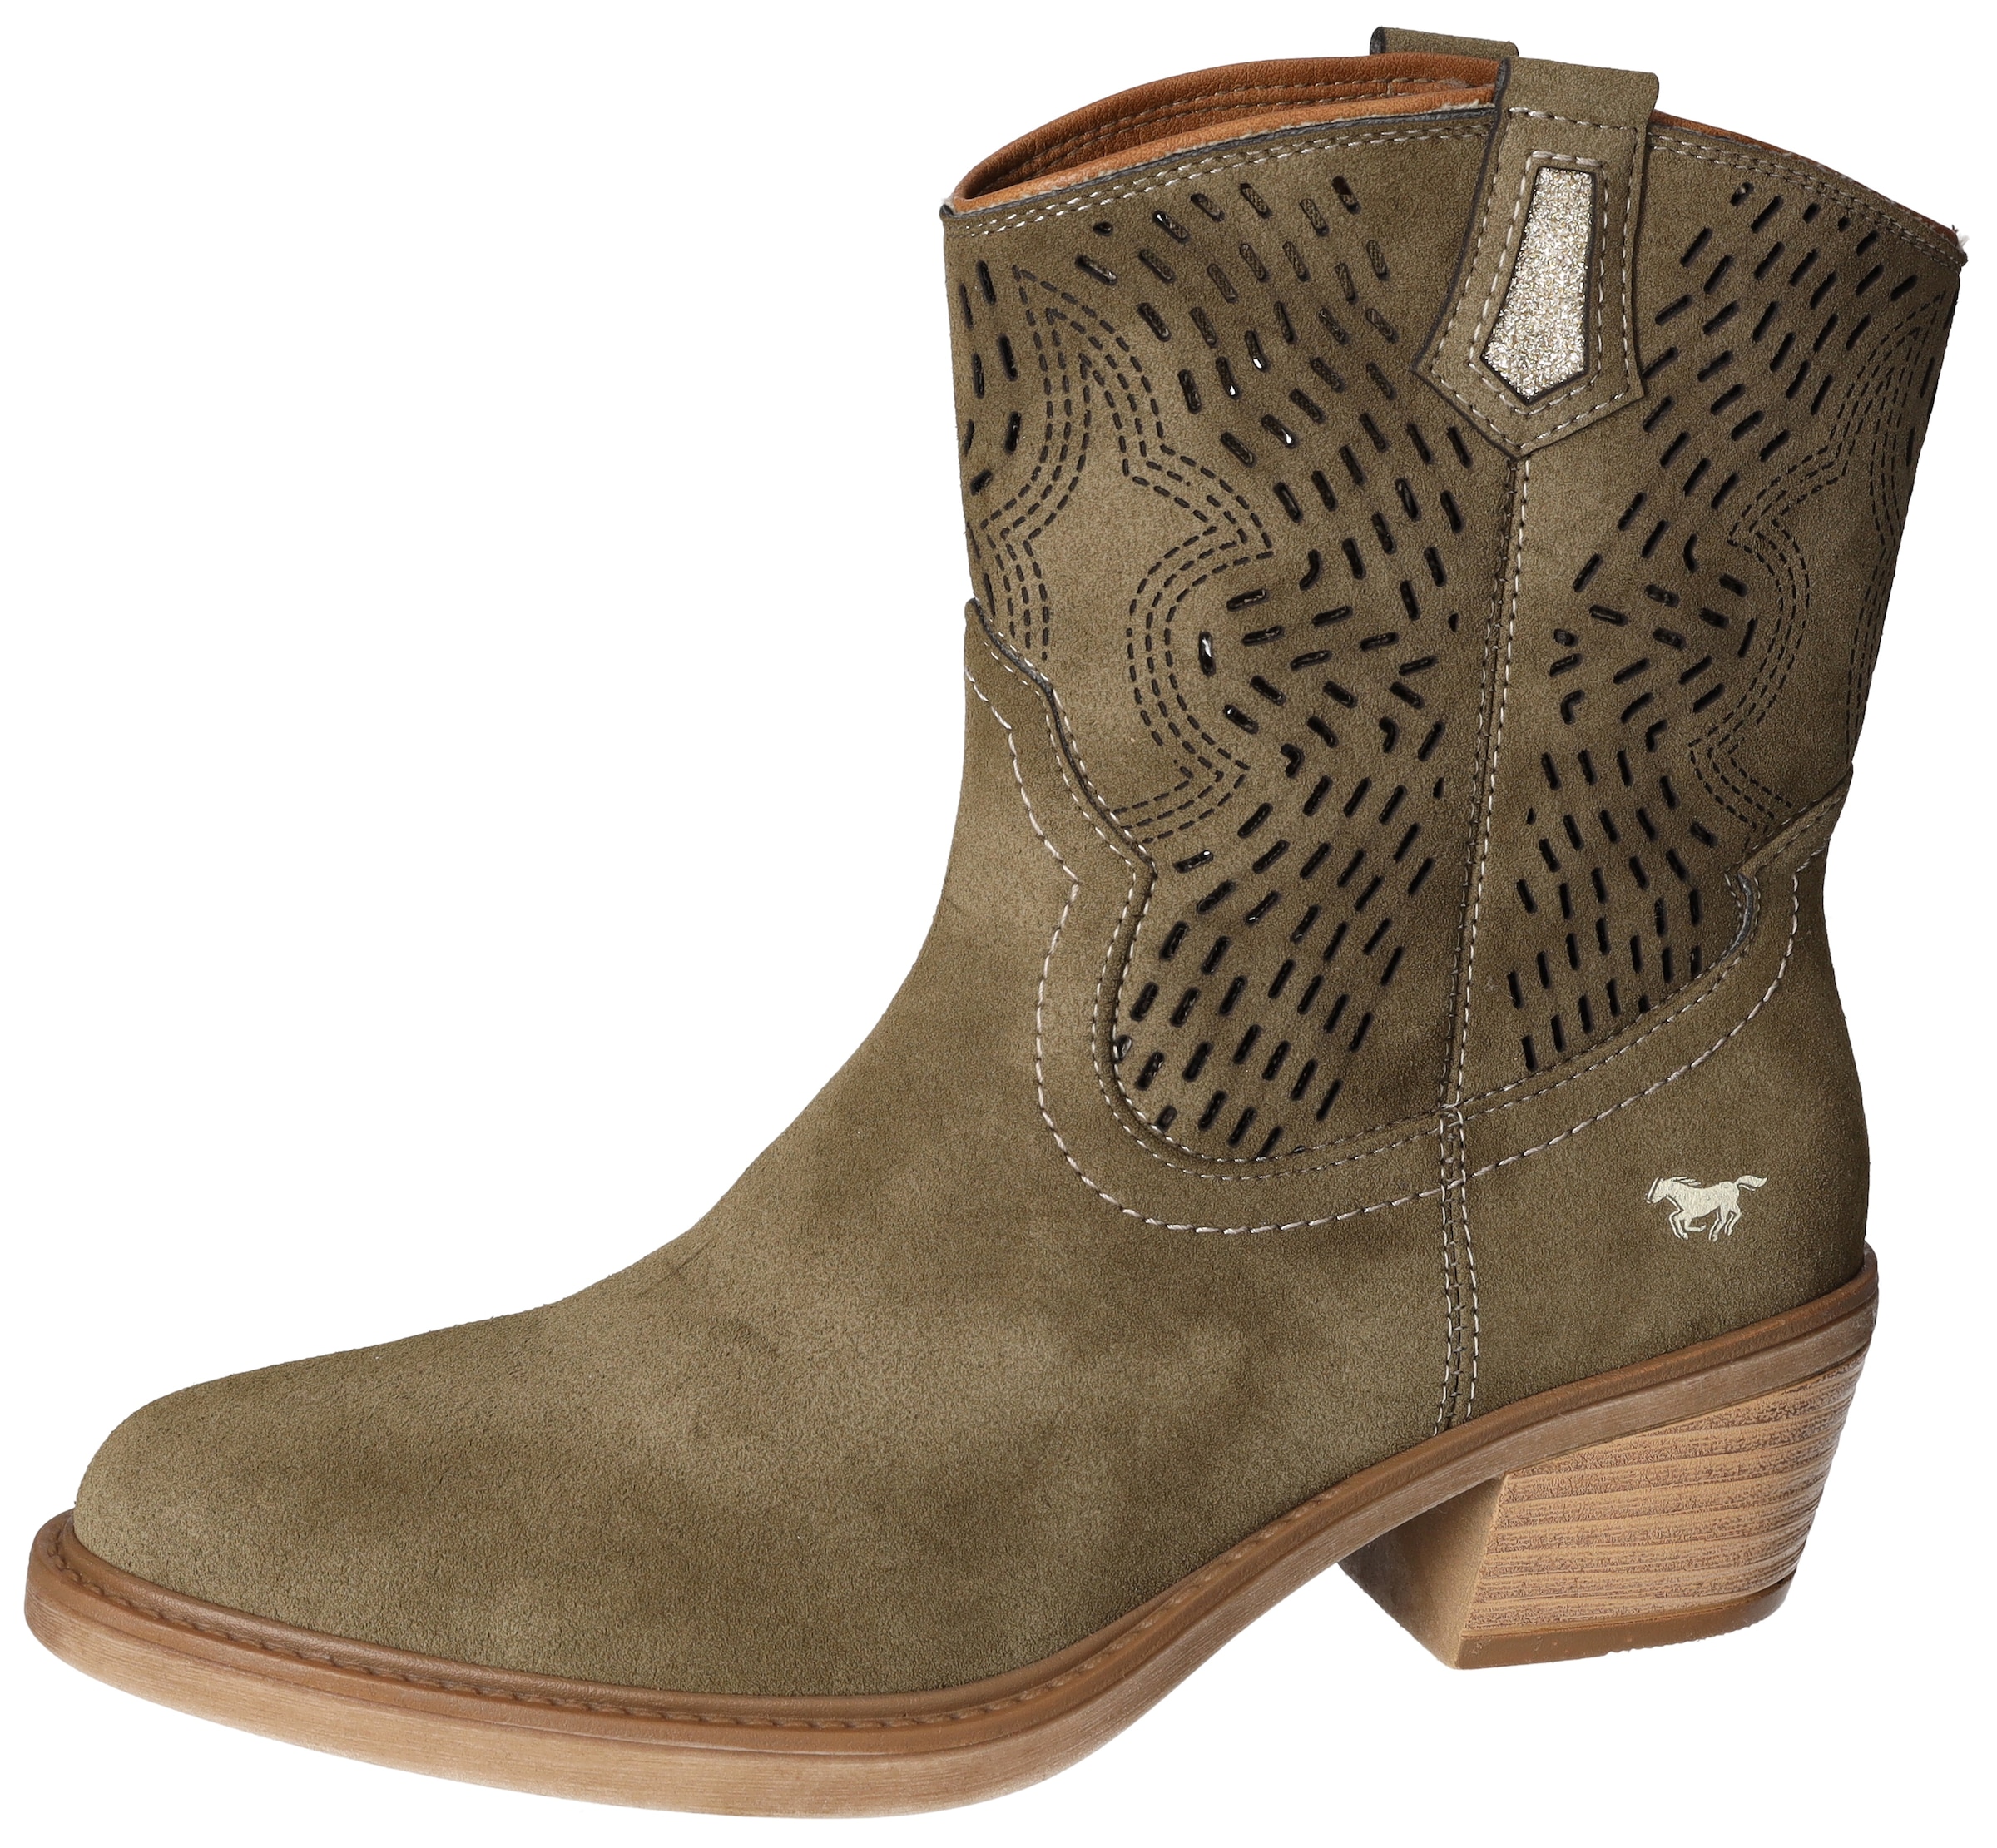 Mustang Shoes Westernstiefelette, Cowboy Stiefelette, Boots mit aufwändiger Perforation am Schaft